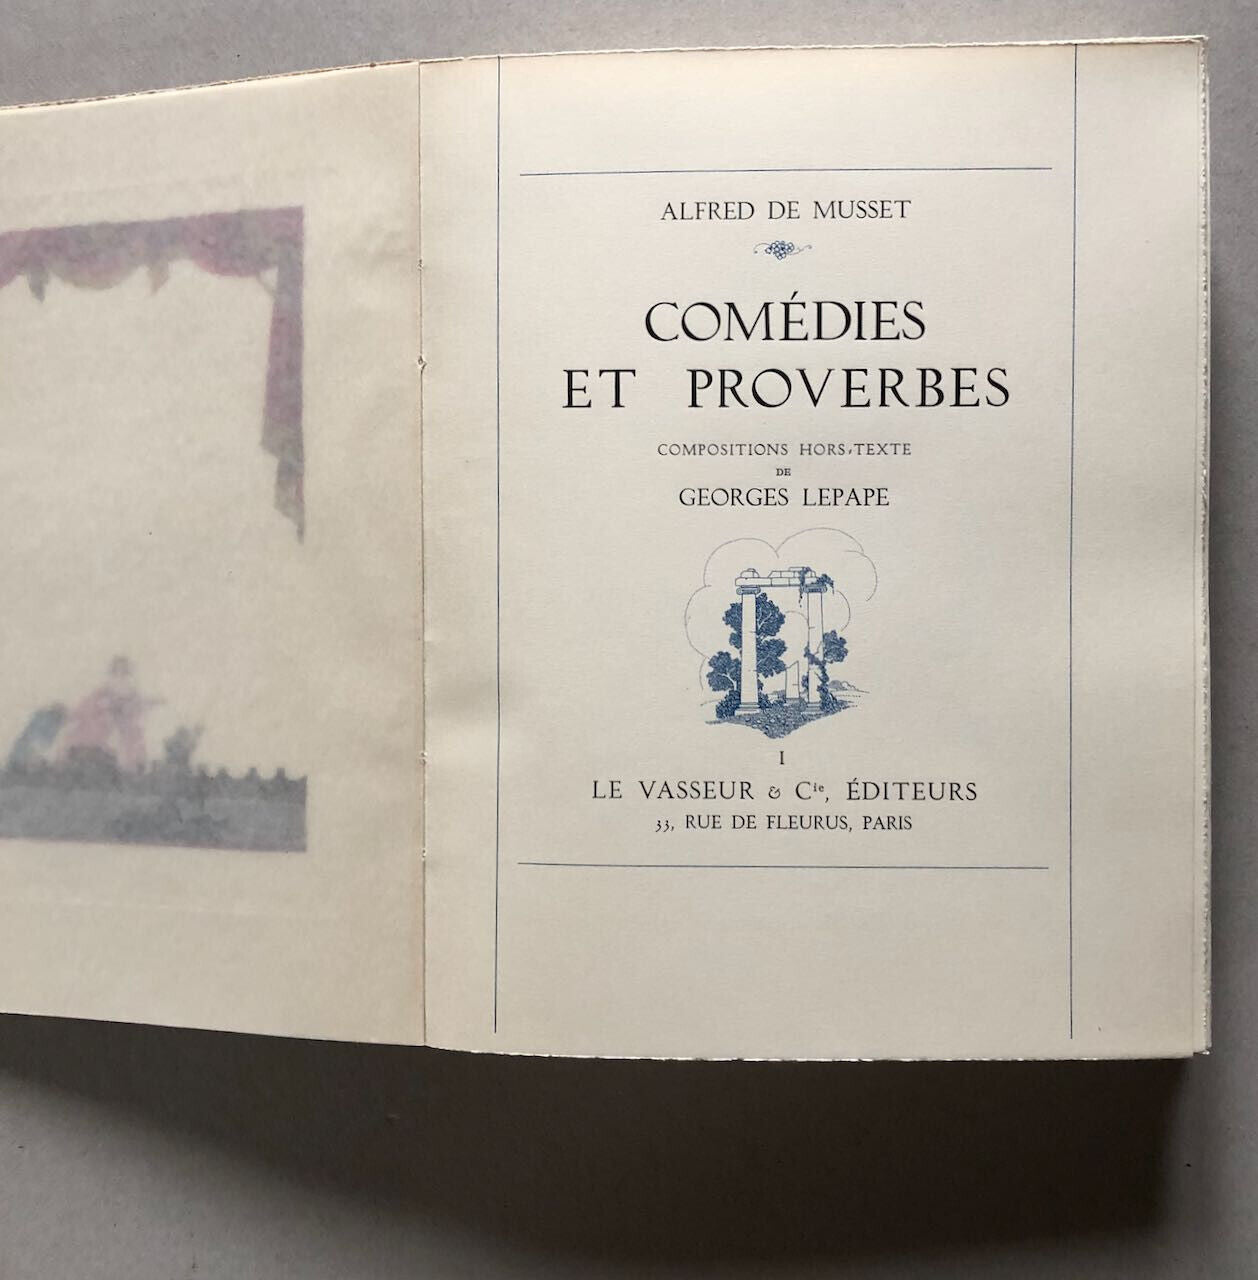 Alfred de Musset — Oeuvres complètes — 10 vol. — illustrations de Lepape — 1937.